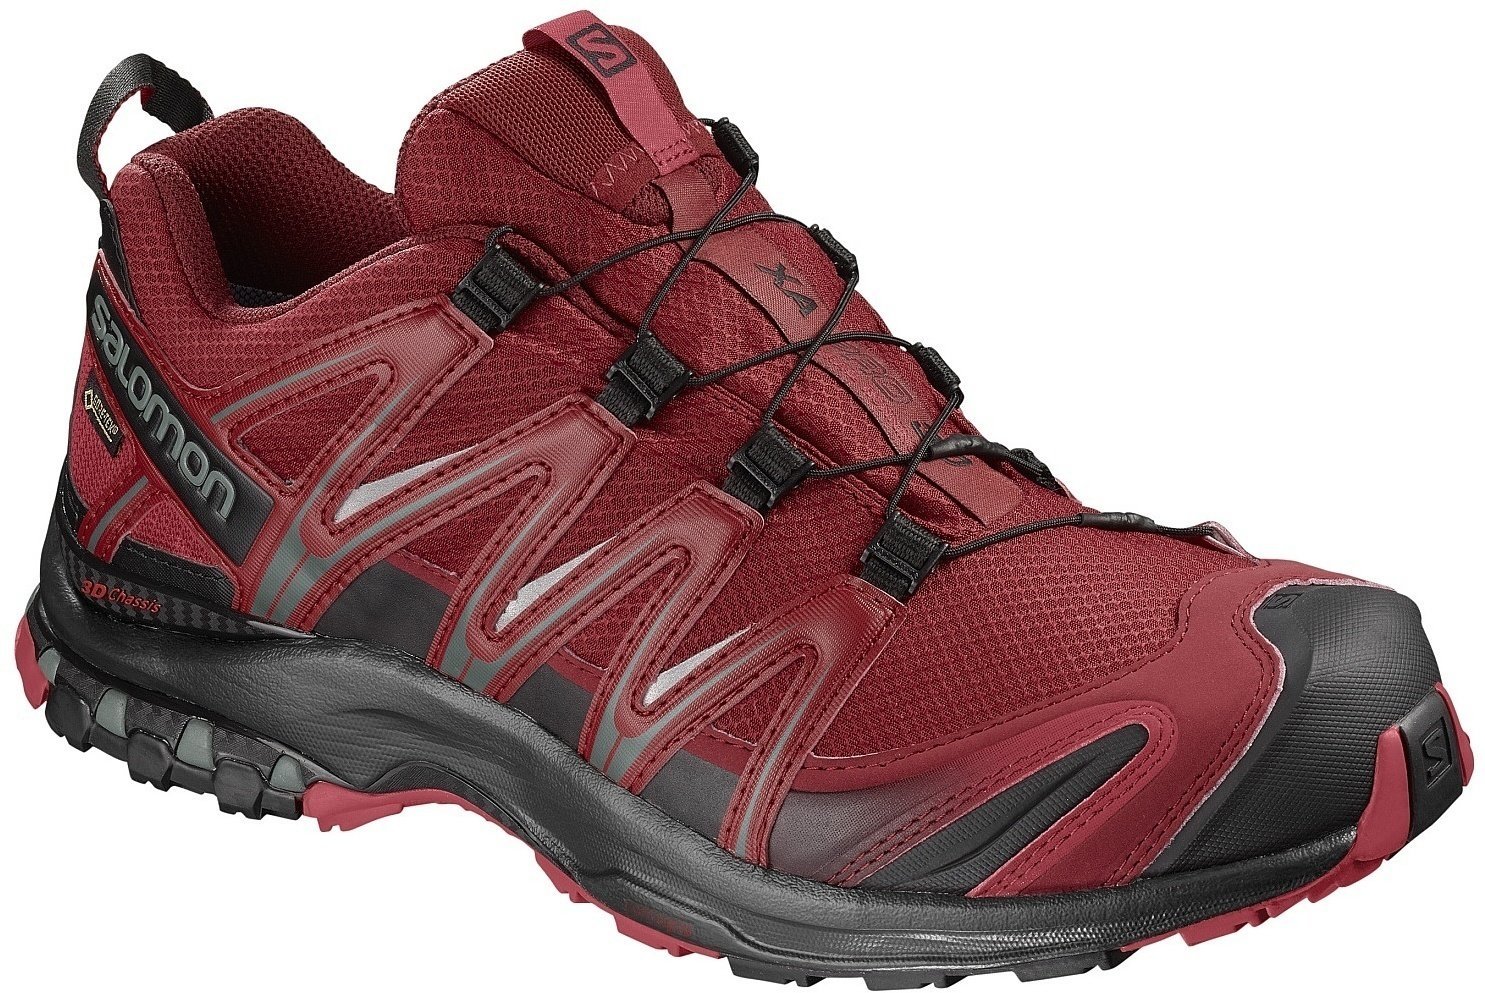 Mens Outdoor Shoes Salomon XA Pro 3D GTX Red Dahlia/Black/Barbados Cherry 44 2/3 Mens Outdoor Shoes